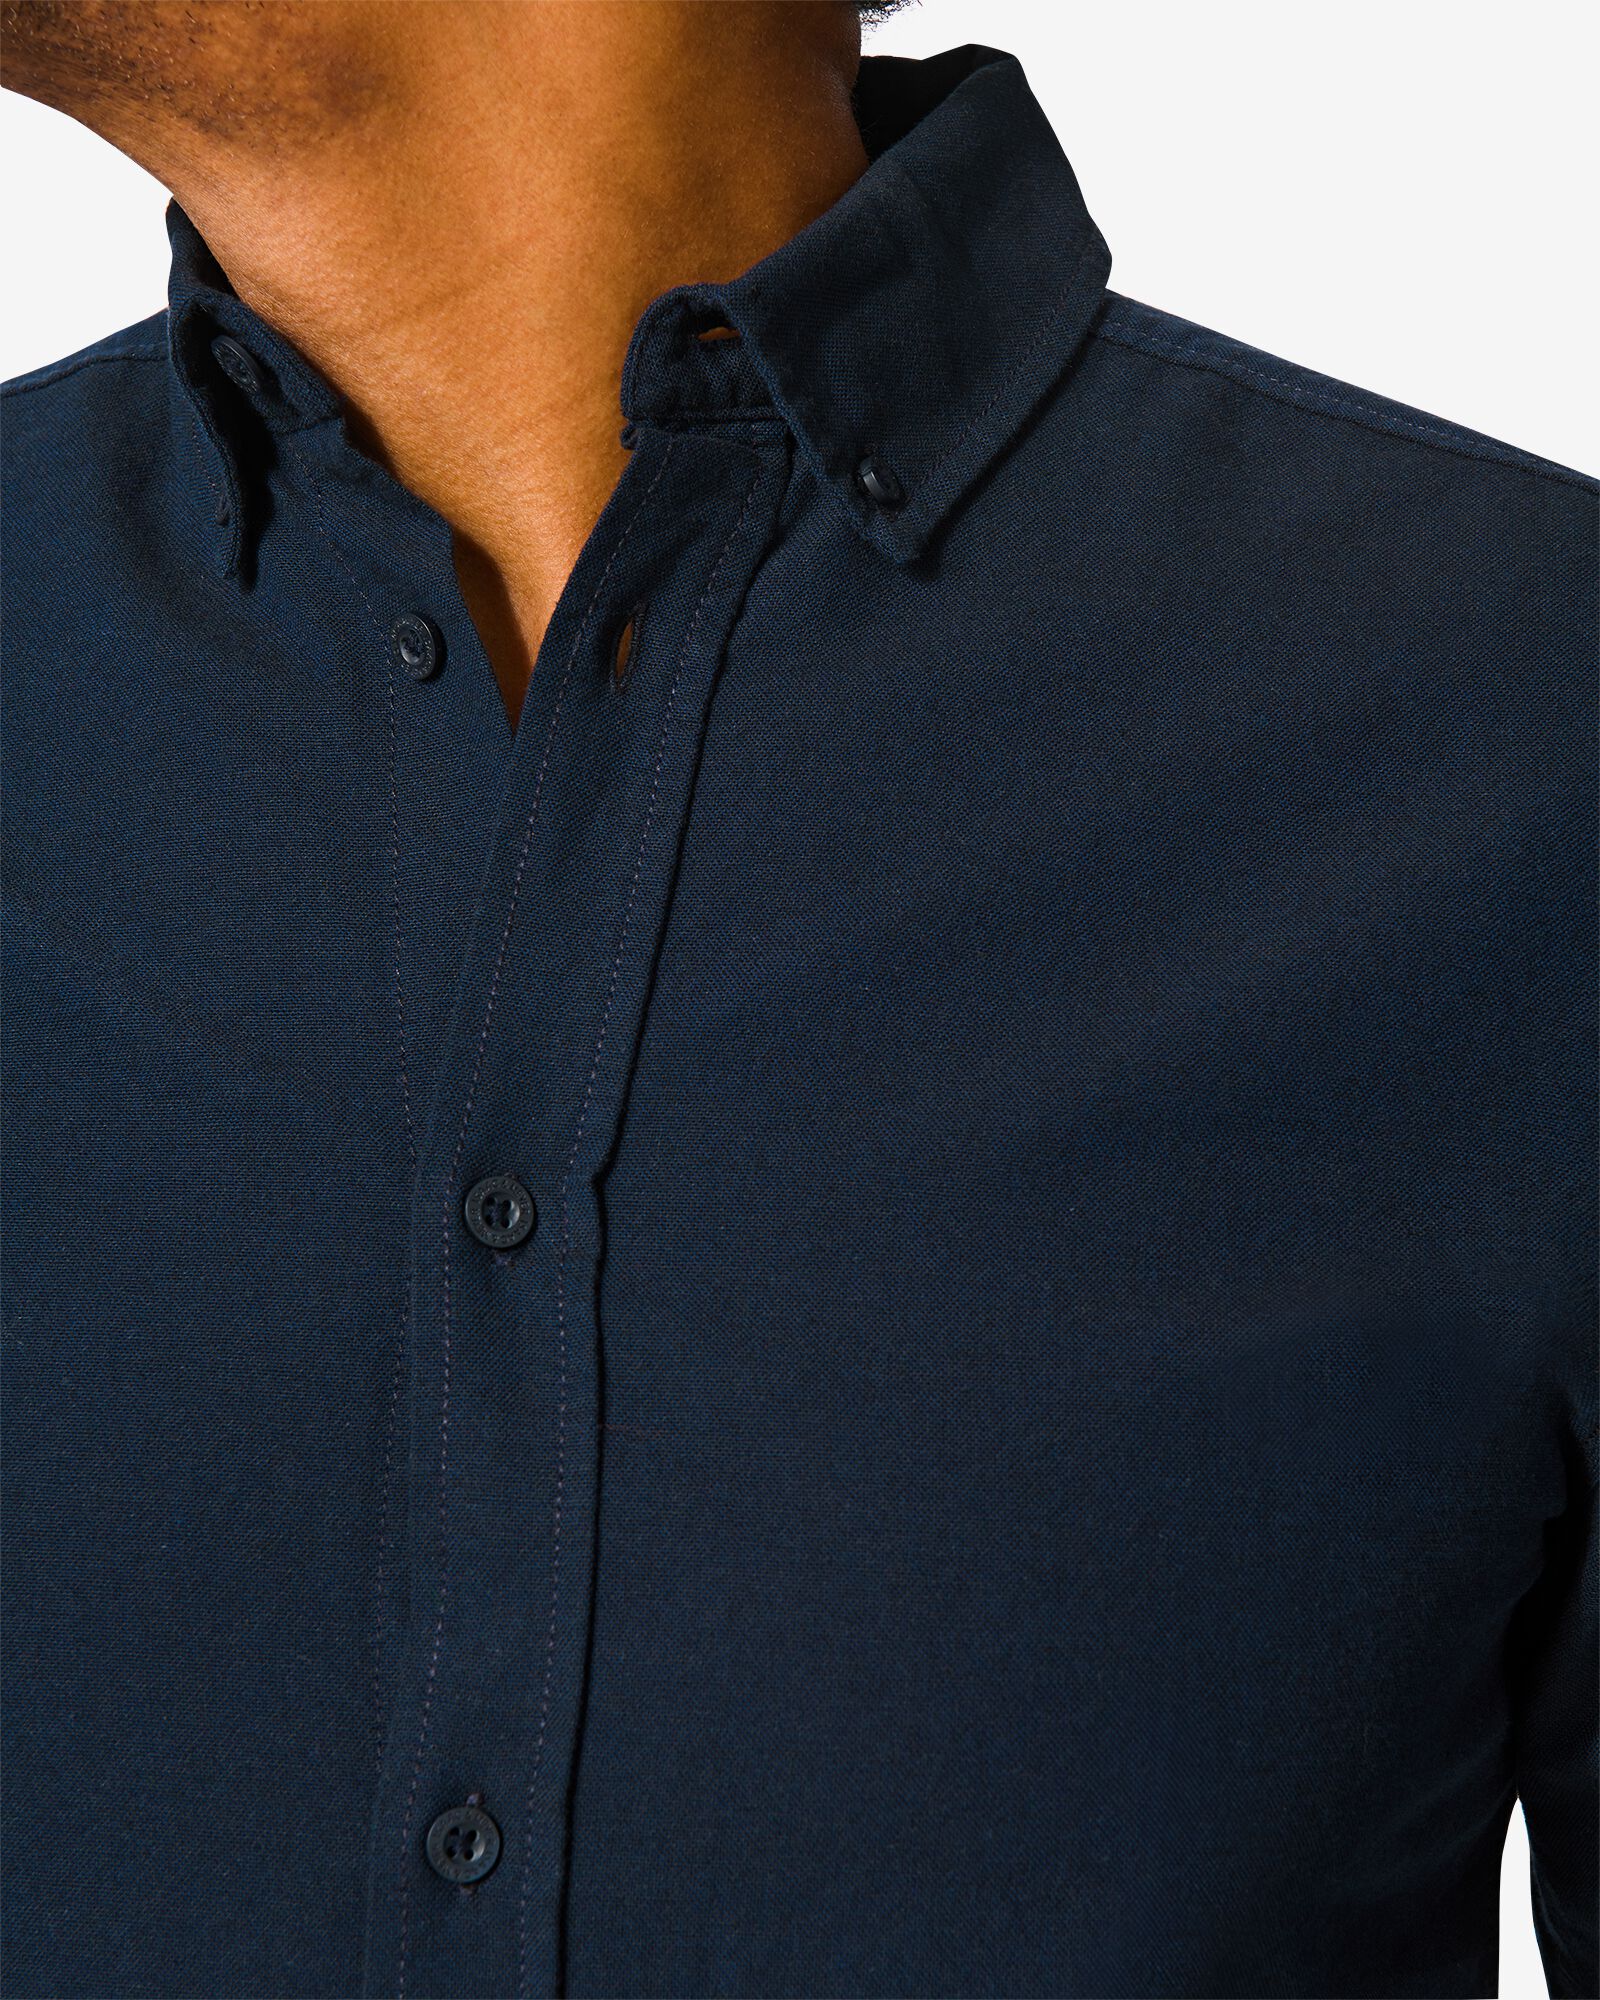 heren overhemd donkerblauw donkerblauw - 1000030210 - HEMA